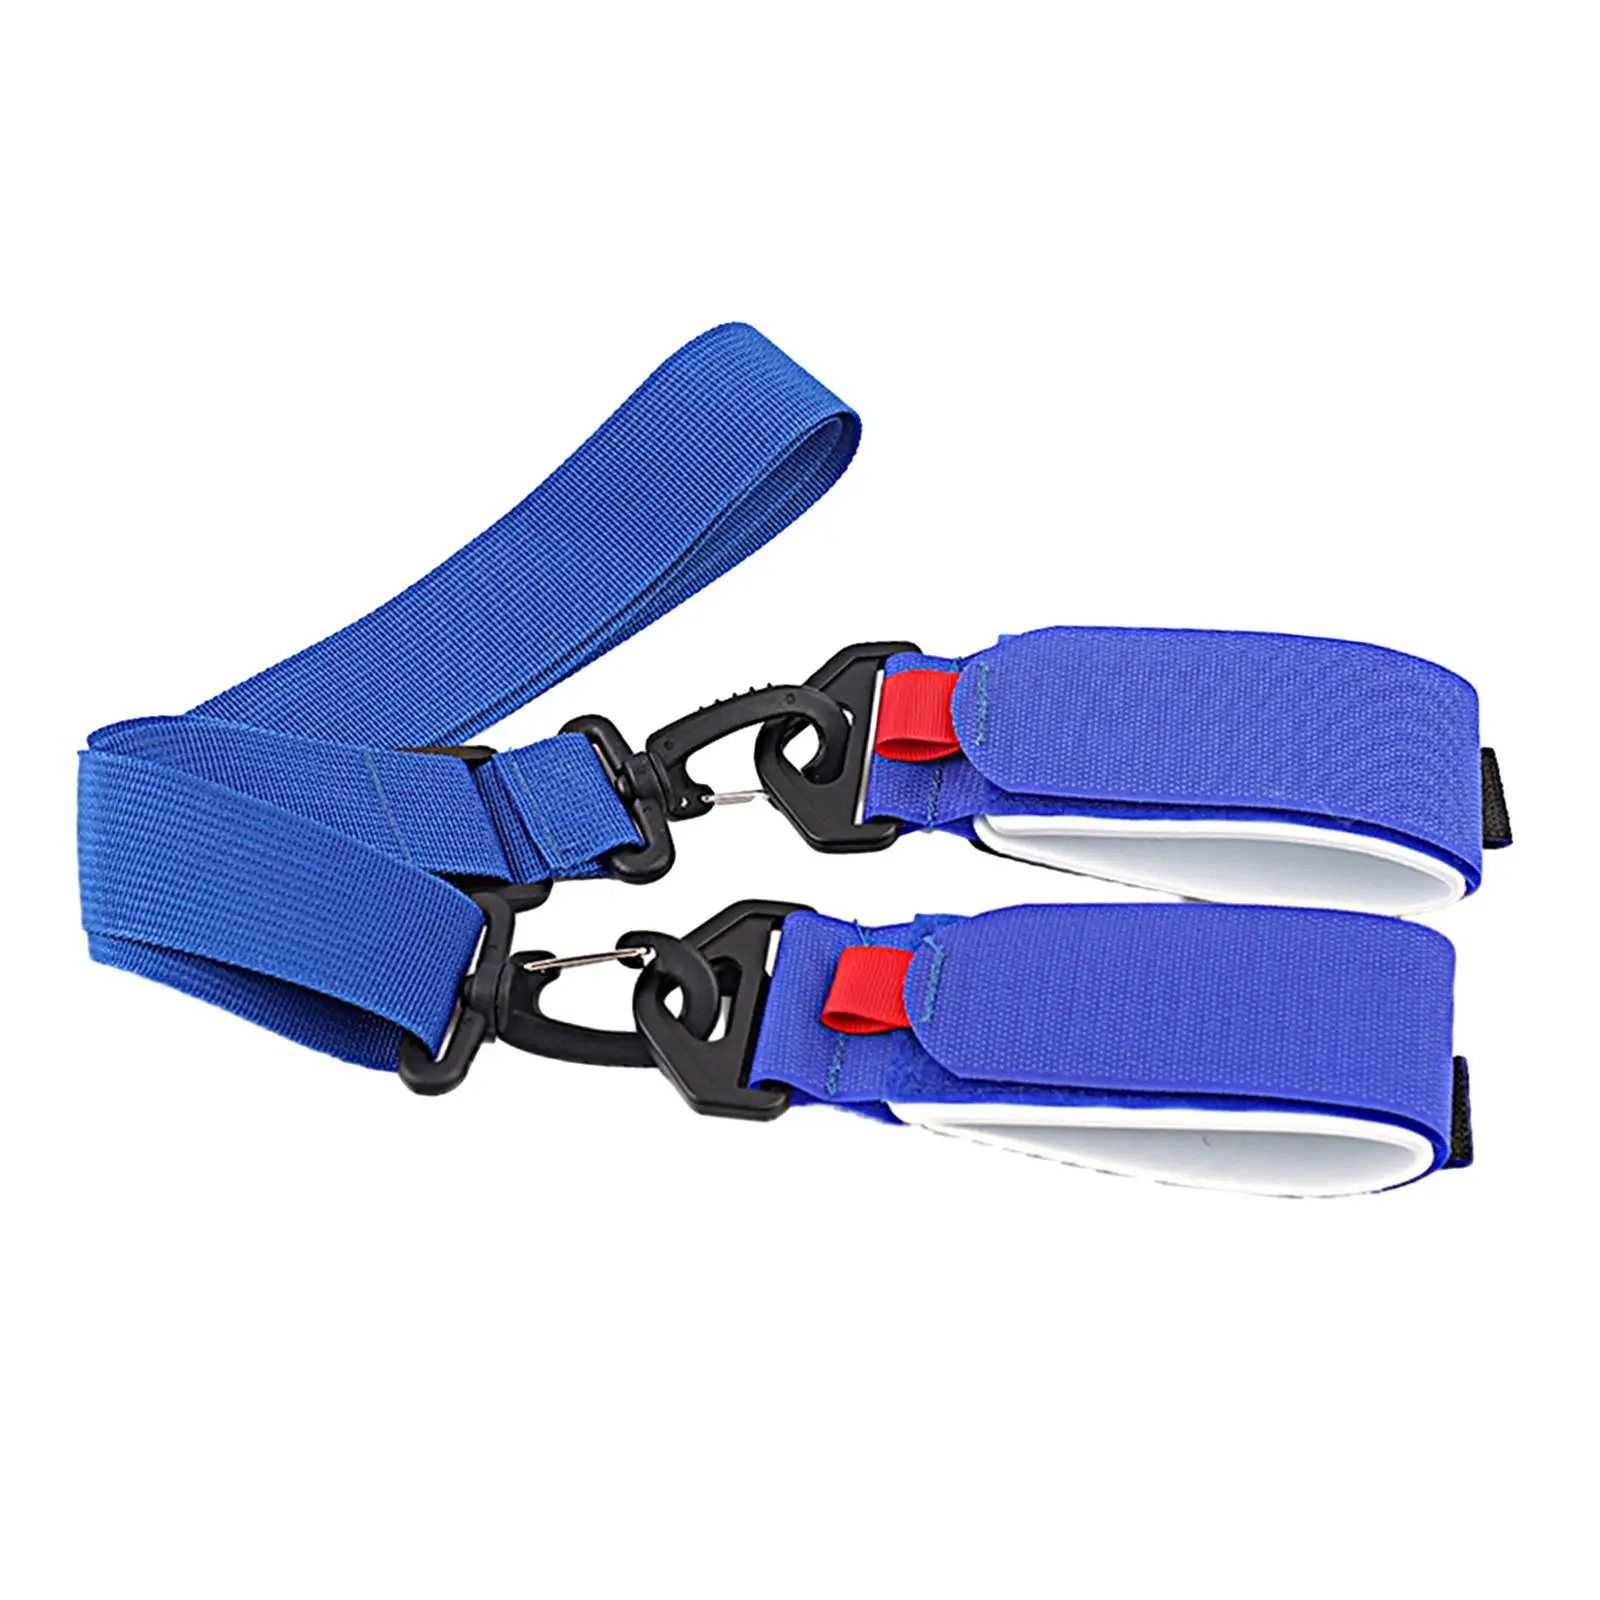 Ski Pole Carrier Strap Ski Shoulder Carrier Lash Ski Handle Strap Snowboard Shoulder Strap for Outdoor Sports Skis Accessory